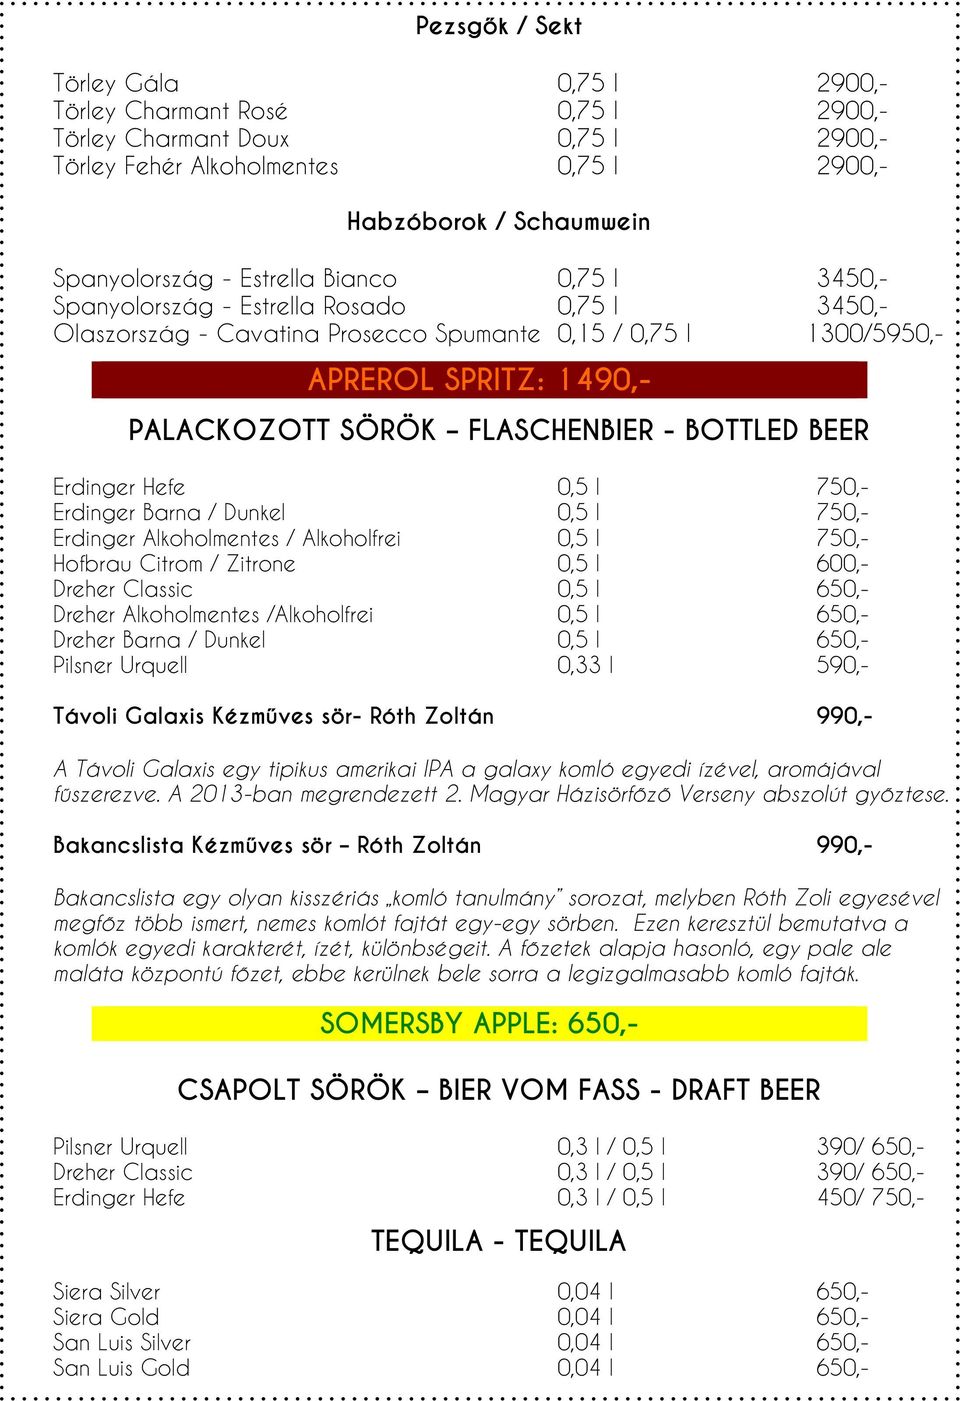 BOTTLED BEER Erdinger Hefe 0,5 l 750,- Erdinger Barna / Dunkel 0,5 l 750,- Erdinger Alkoholmentes / Alkoholfrei 0,5 l 750,- Hofbrau Citrom / Zitrone 0,5 l 600,- Dreher Classic 0,5 l 650,- Dreher